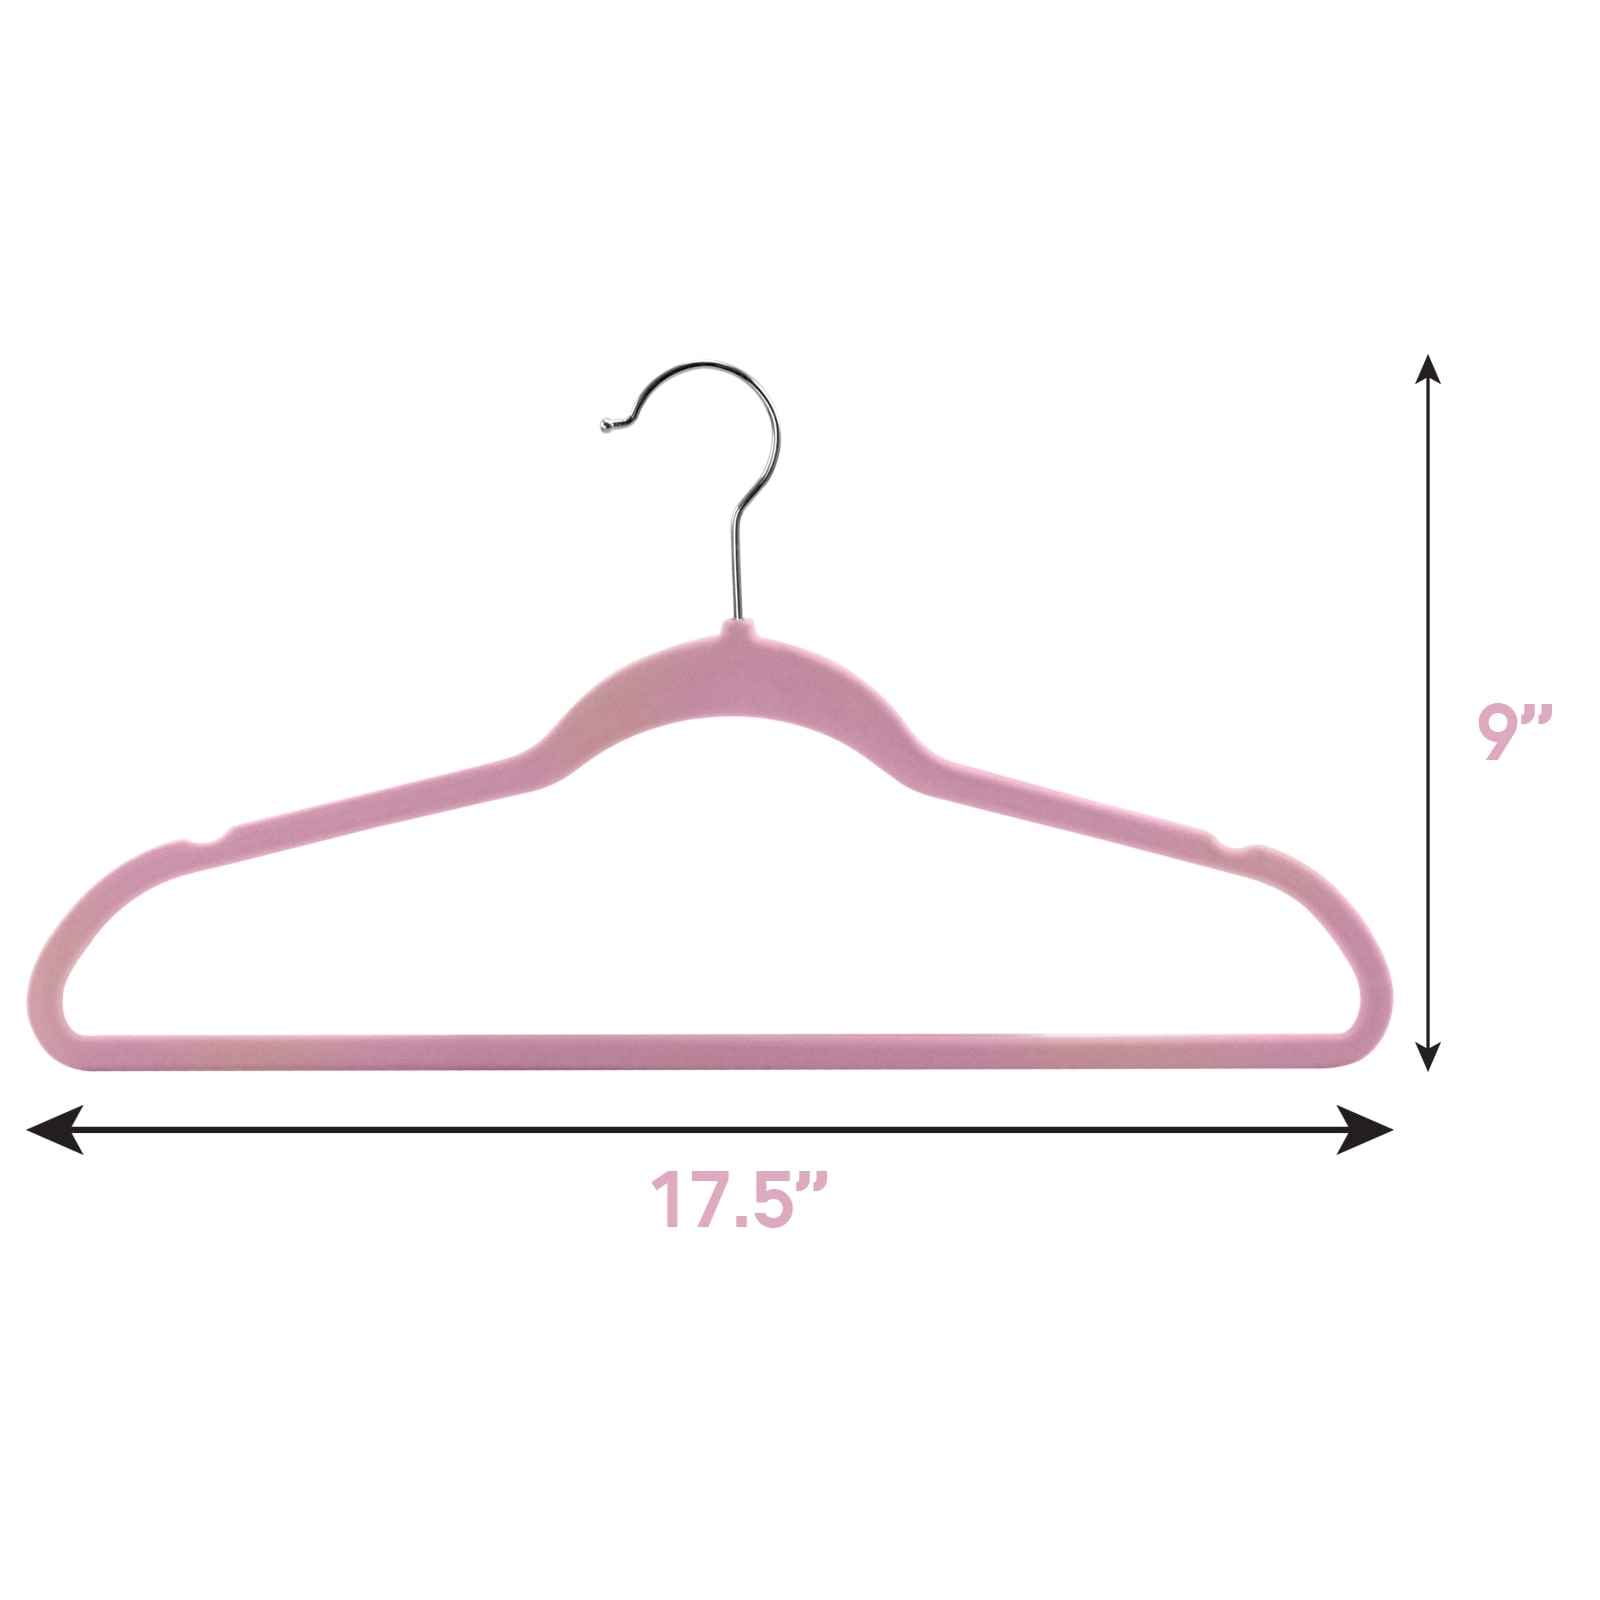 Elama 50-Pack Velvet Non-slip Grip Clothing Hanger (Pink) in the